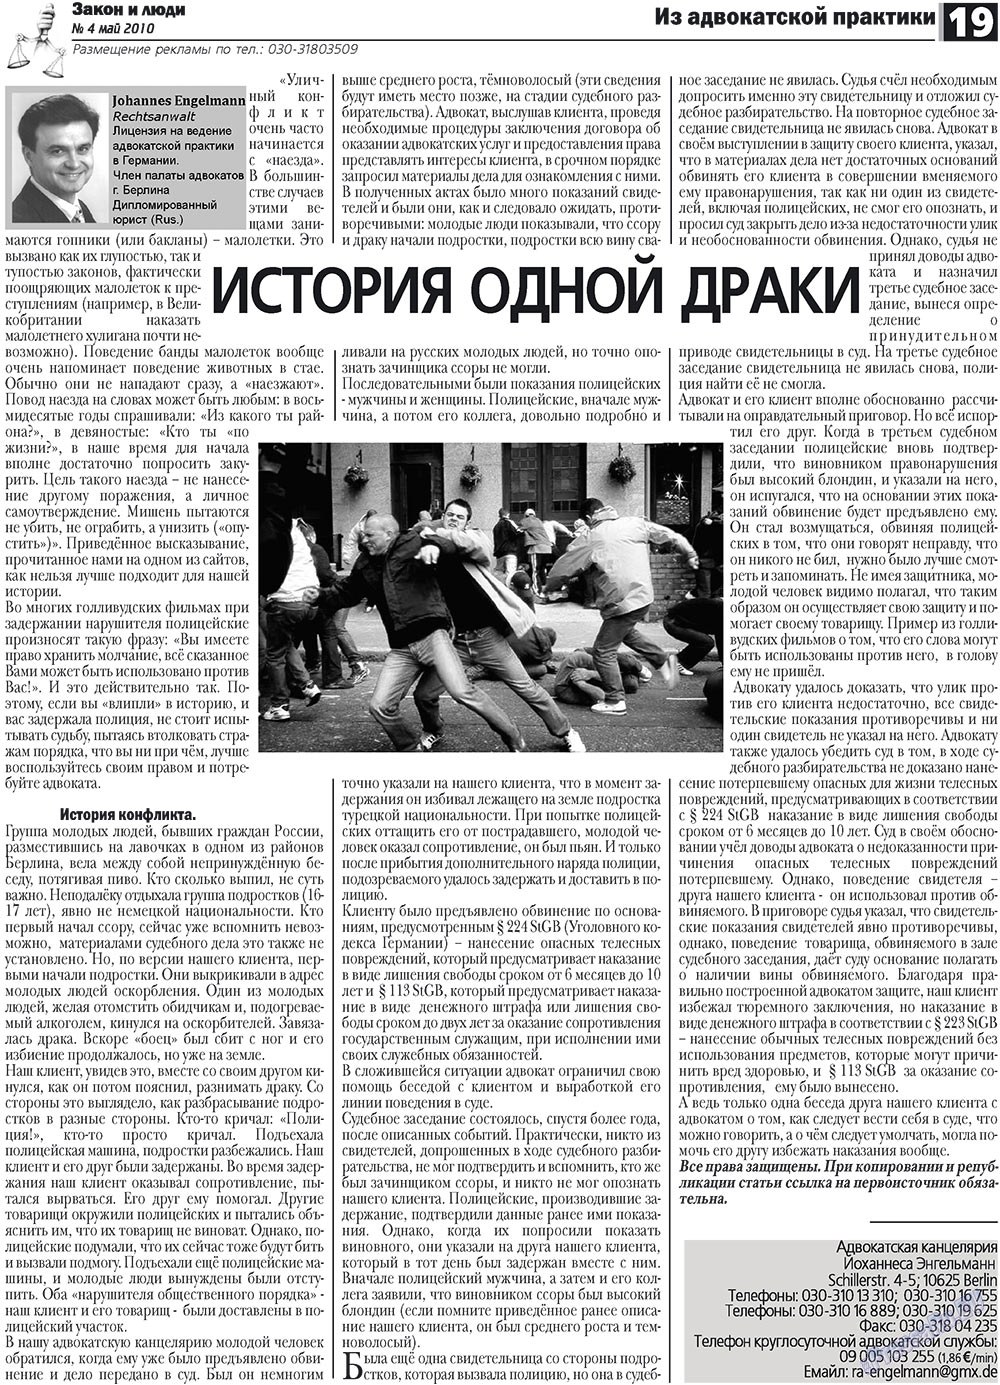 Закон и люди (газета). 2010 год, номер 4, стр. 19